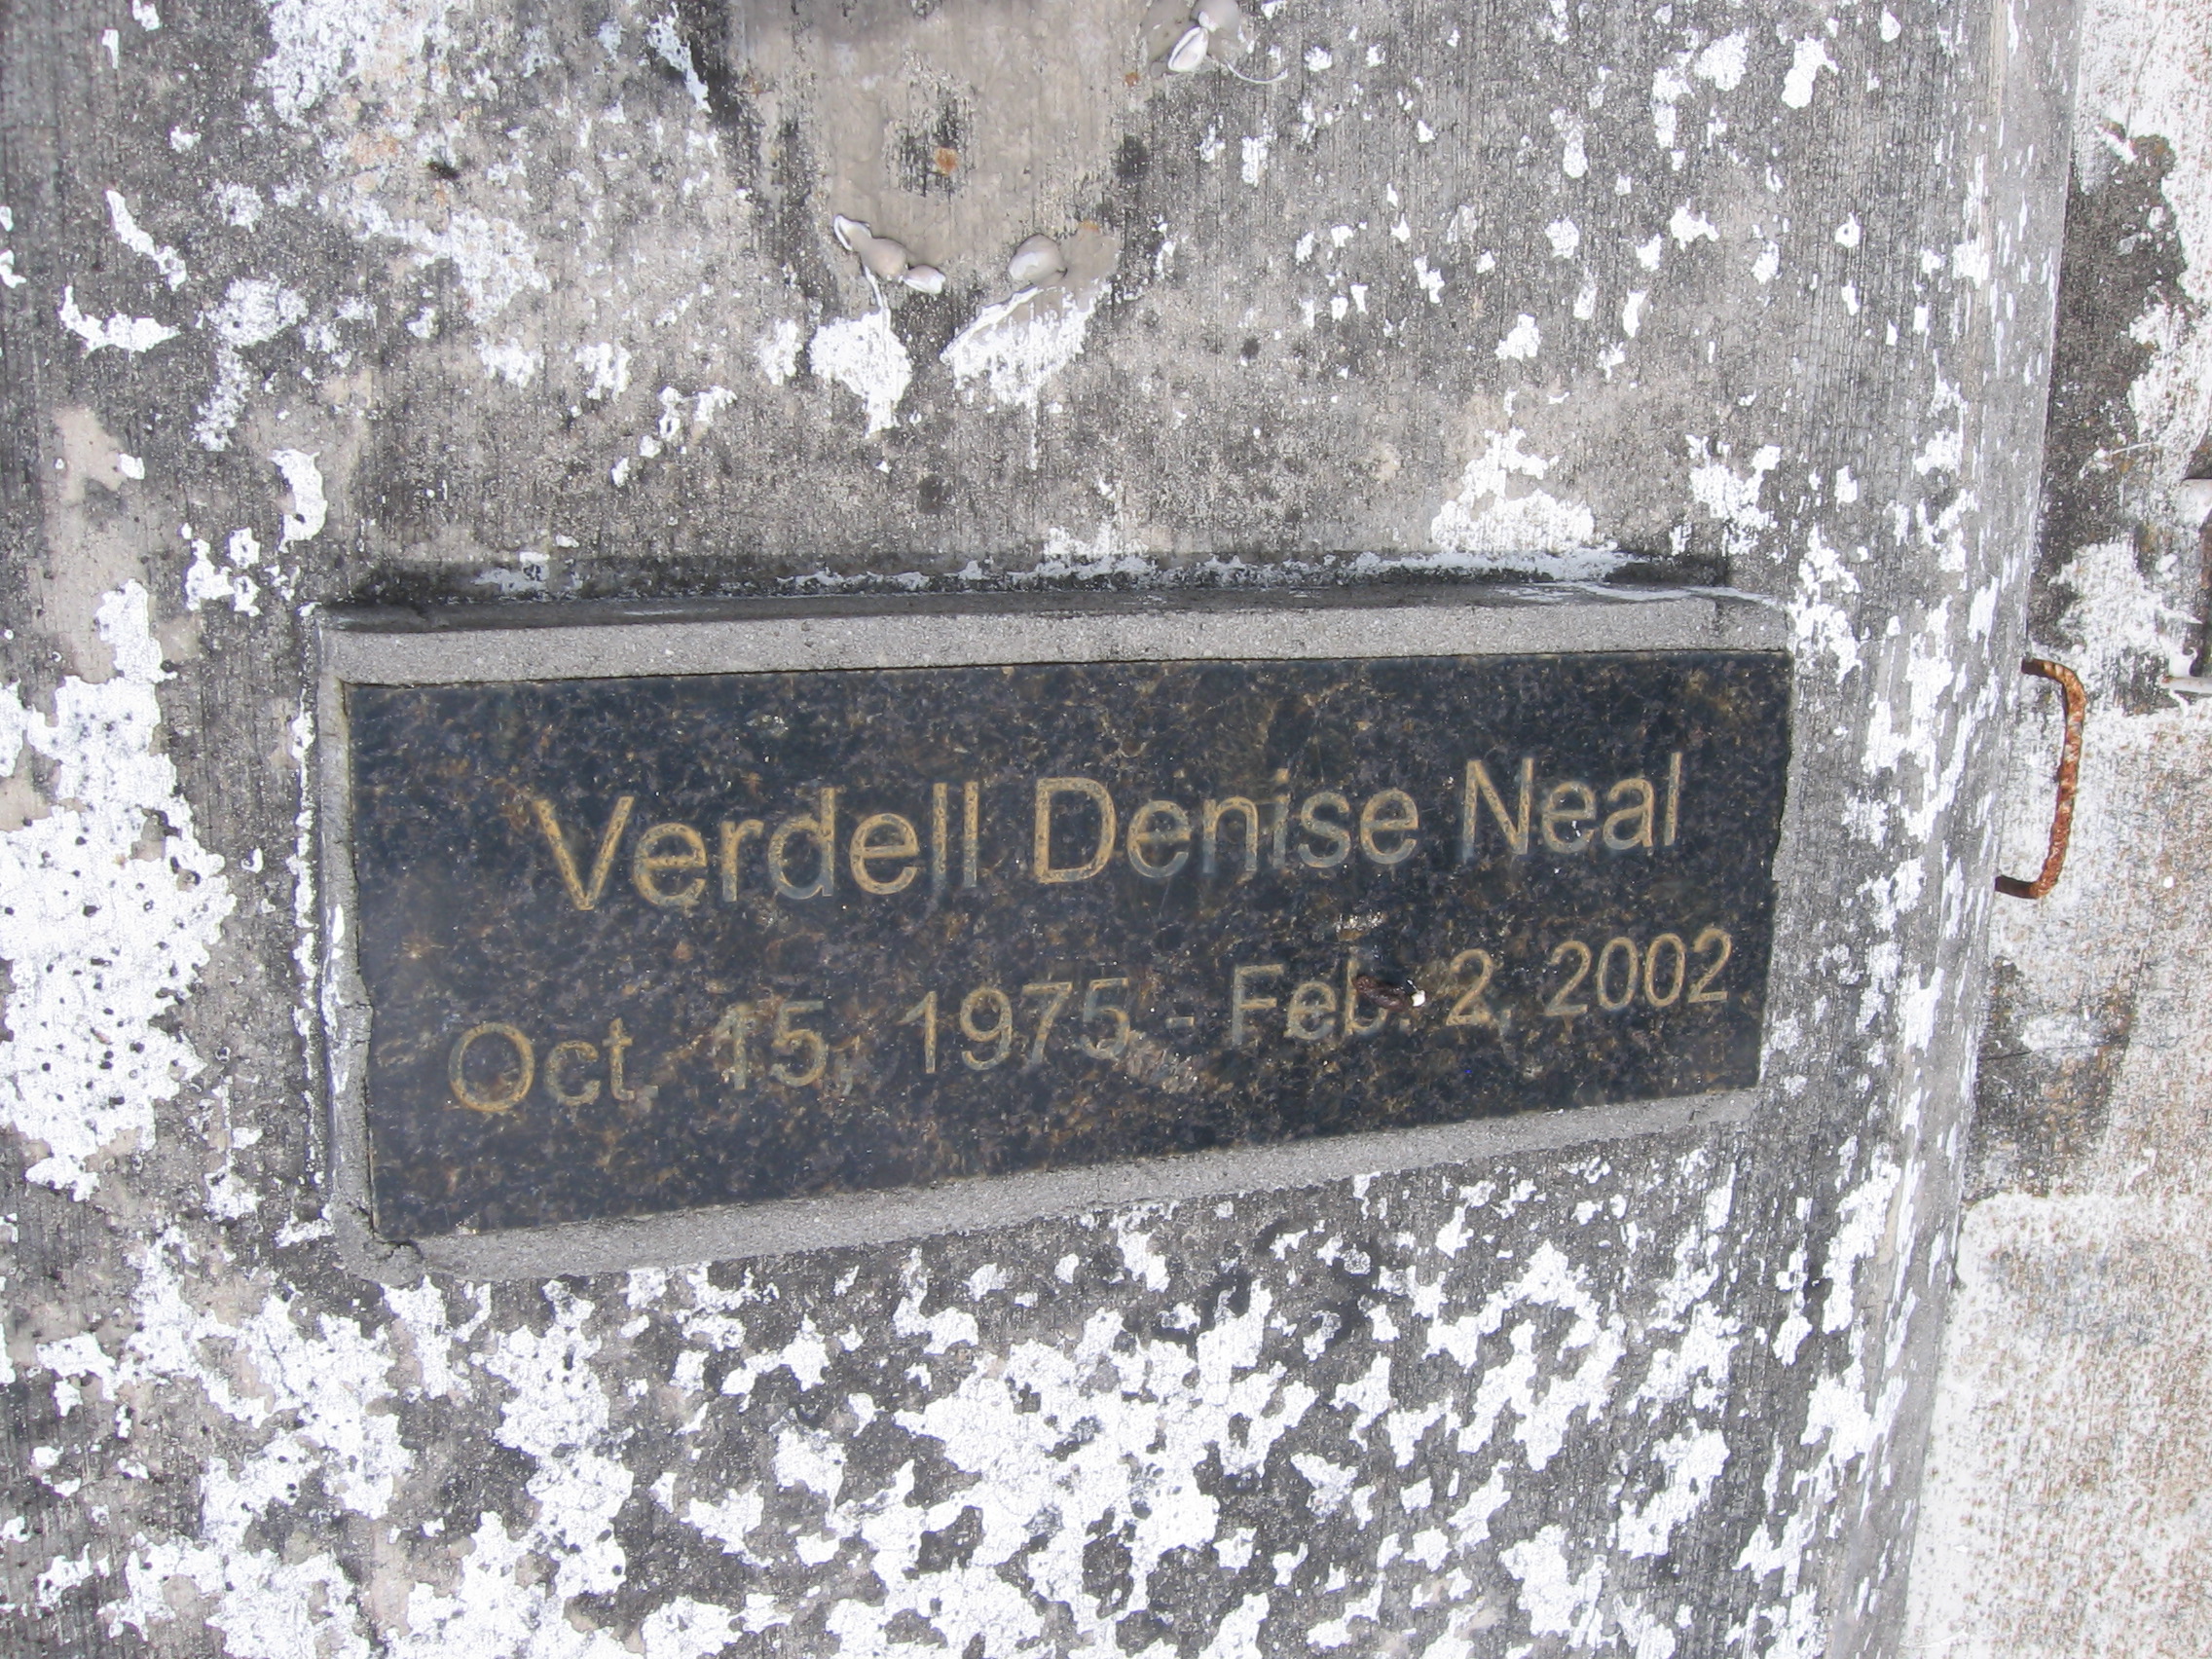 Verdell Denise Neal